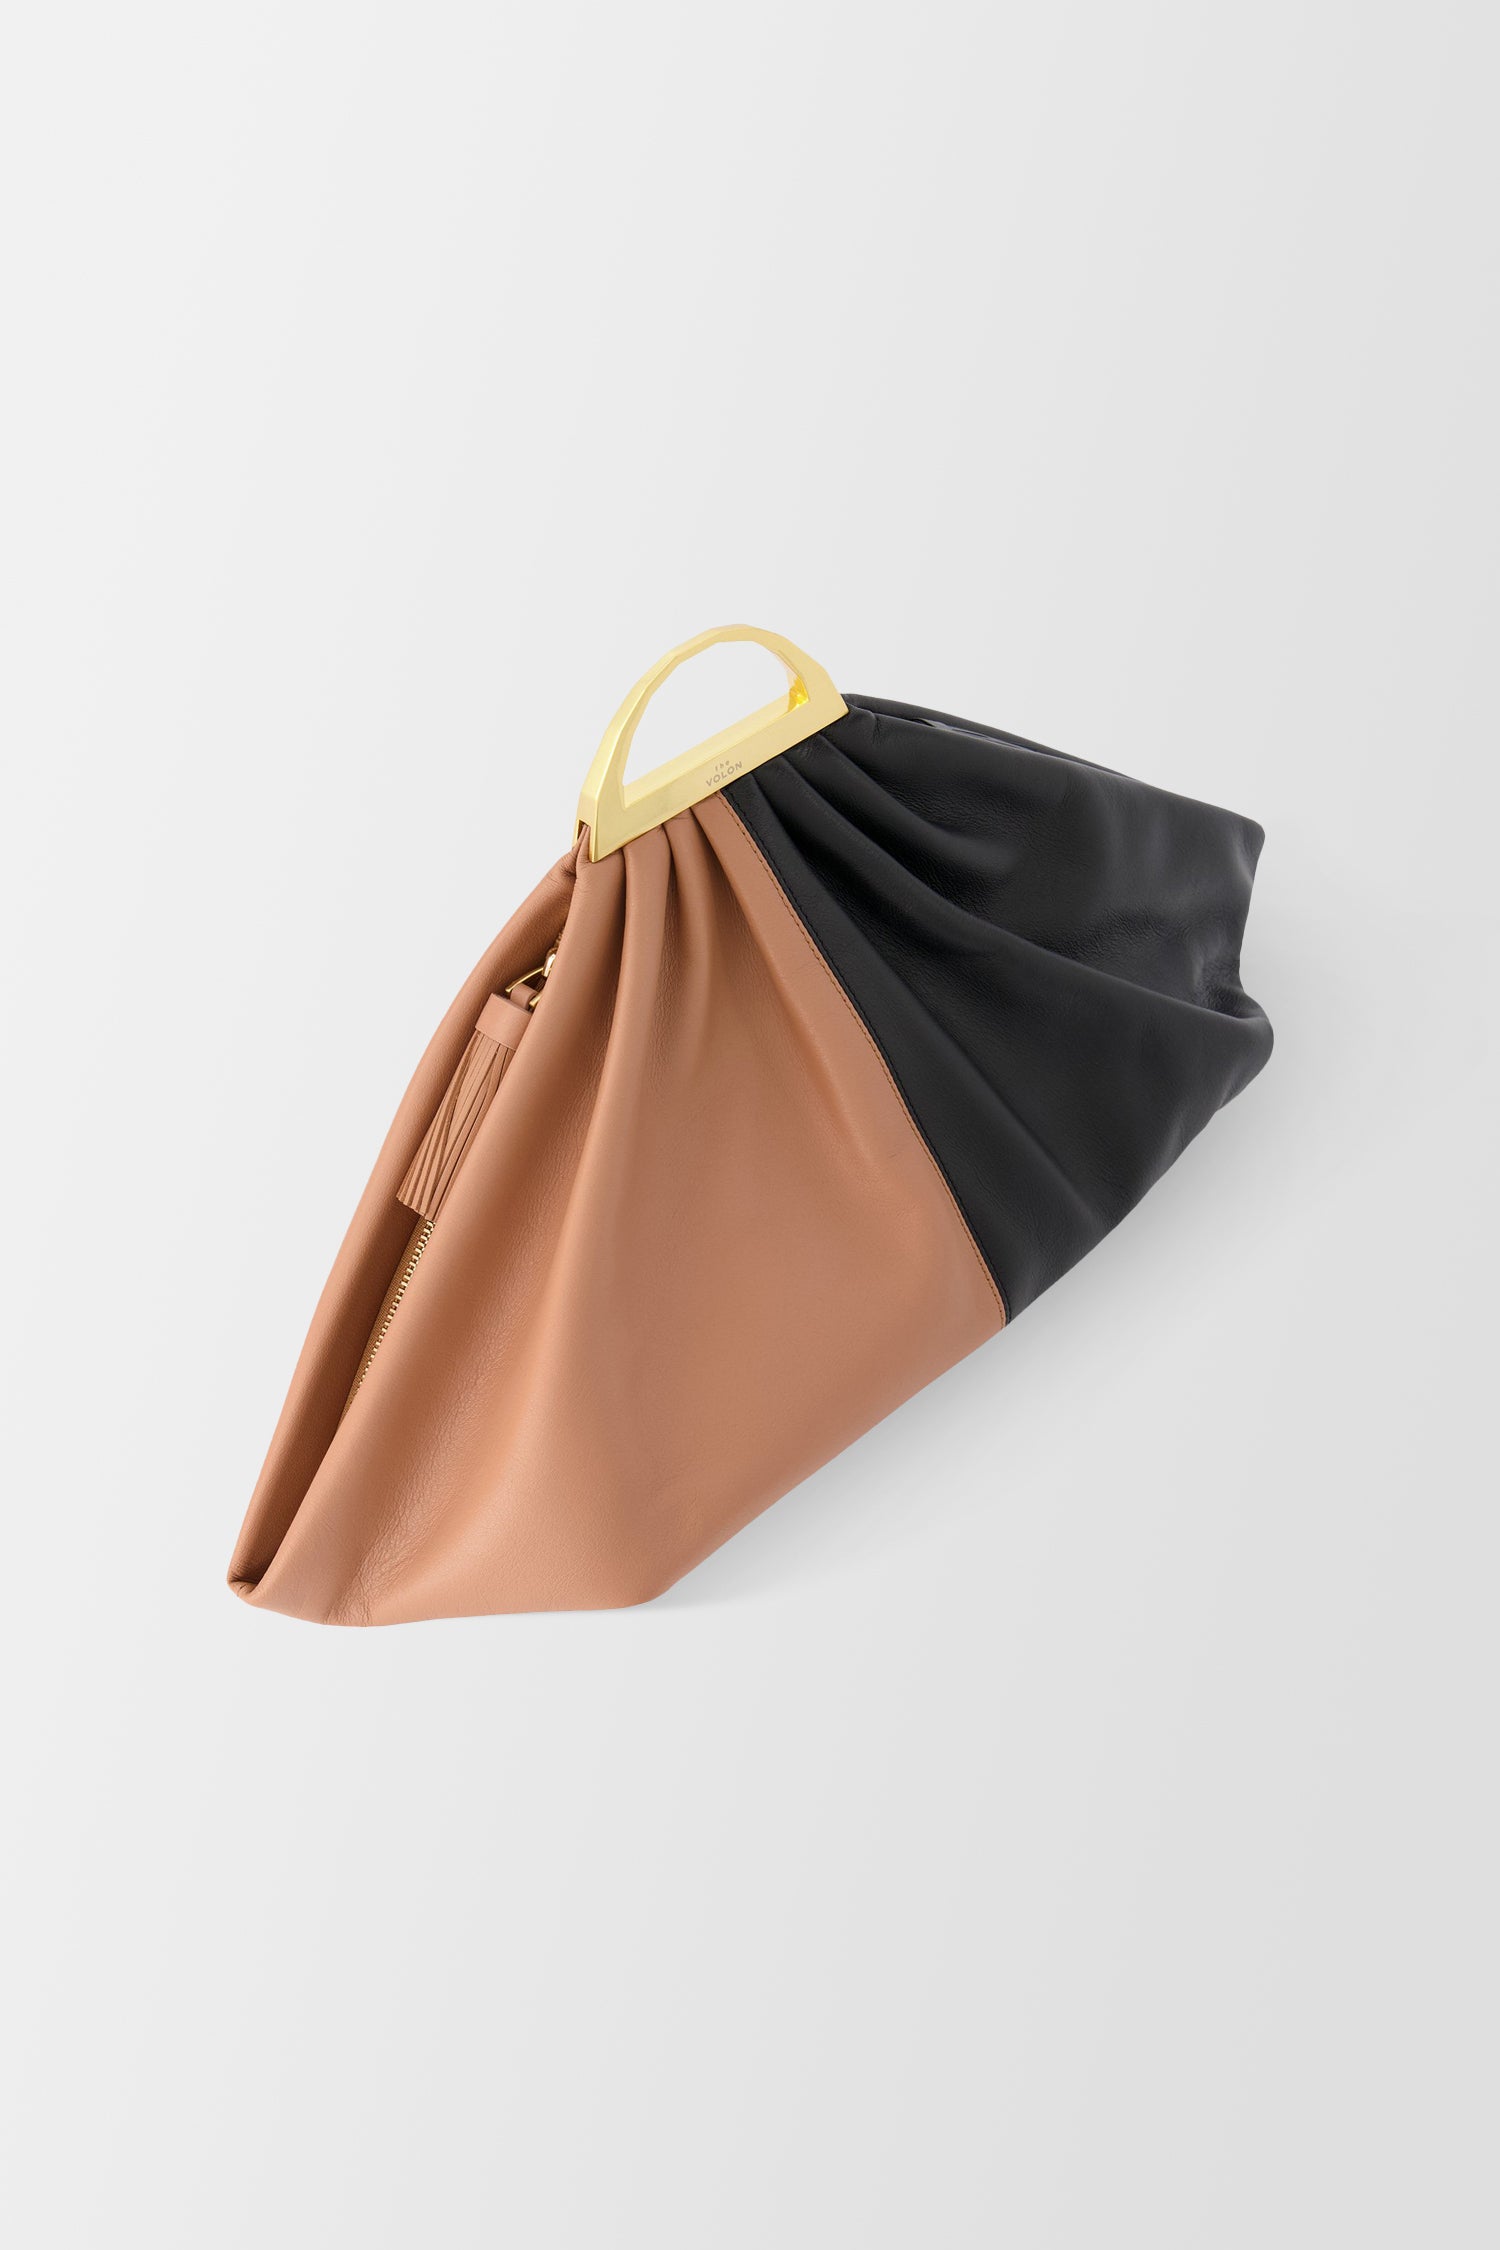 The Volon Maple/ Black Gabi Handbag